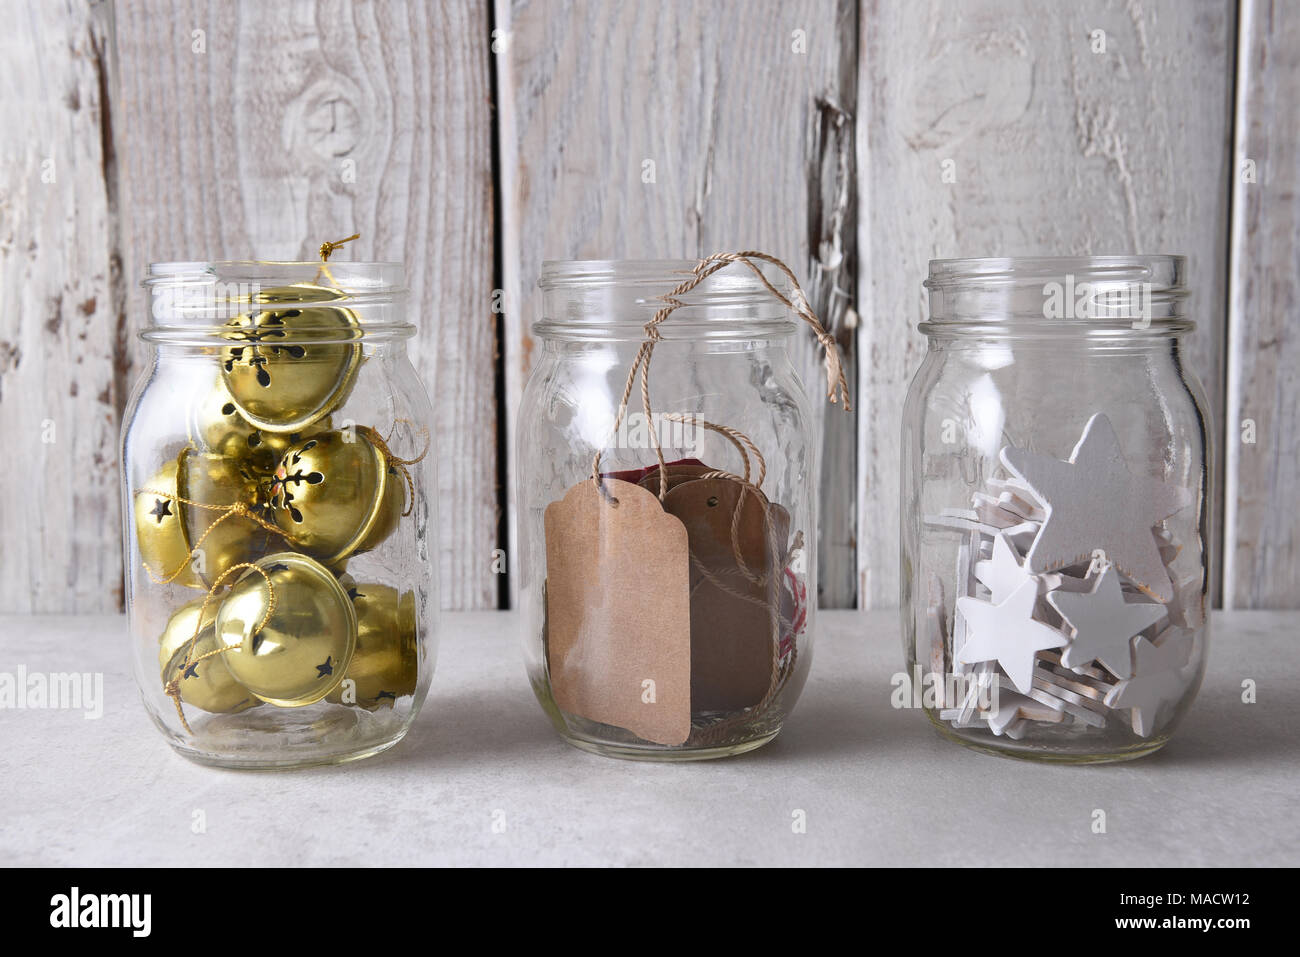 Regalo di natale incarto di forniture. Tre vasetti di vetro con tag regalo, legno stelle e sleigh bells contro un rustico di legno bianco parete. Foto Stock